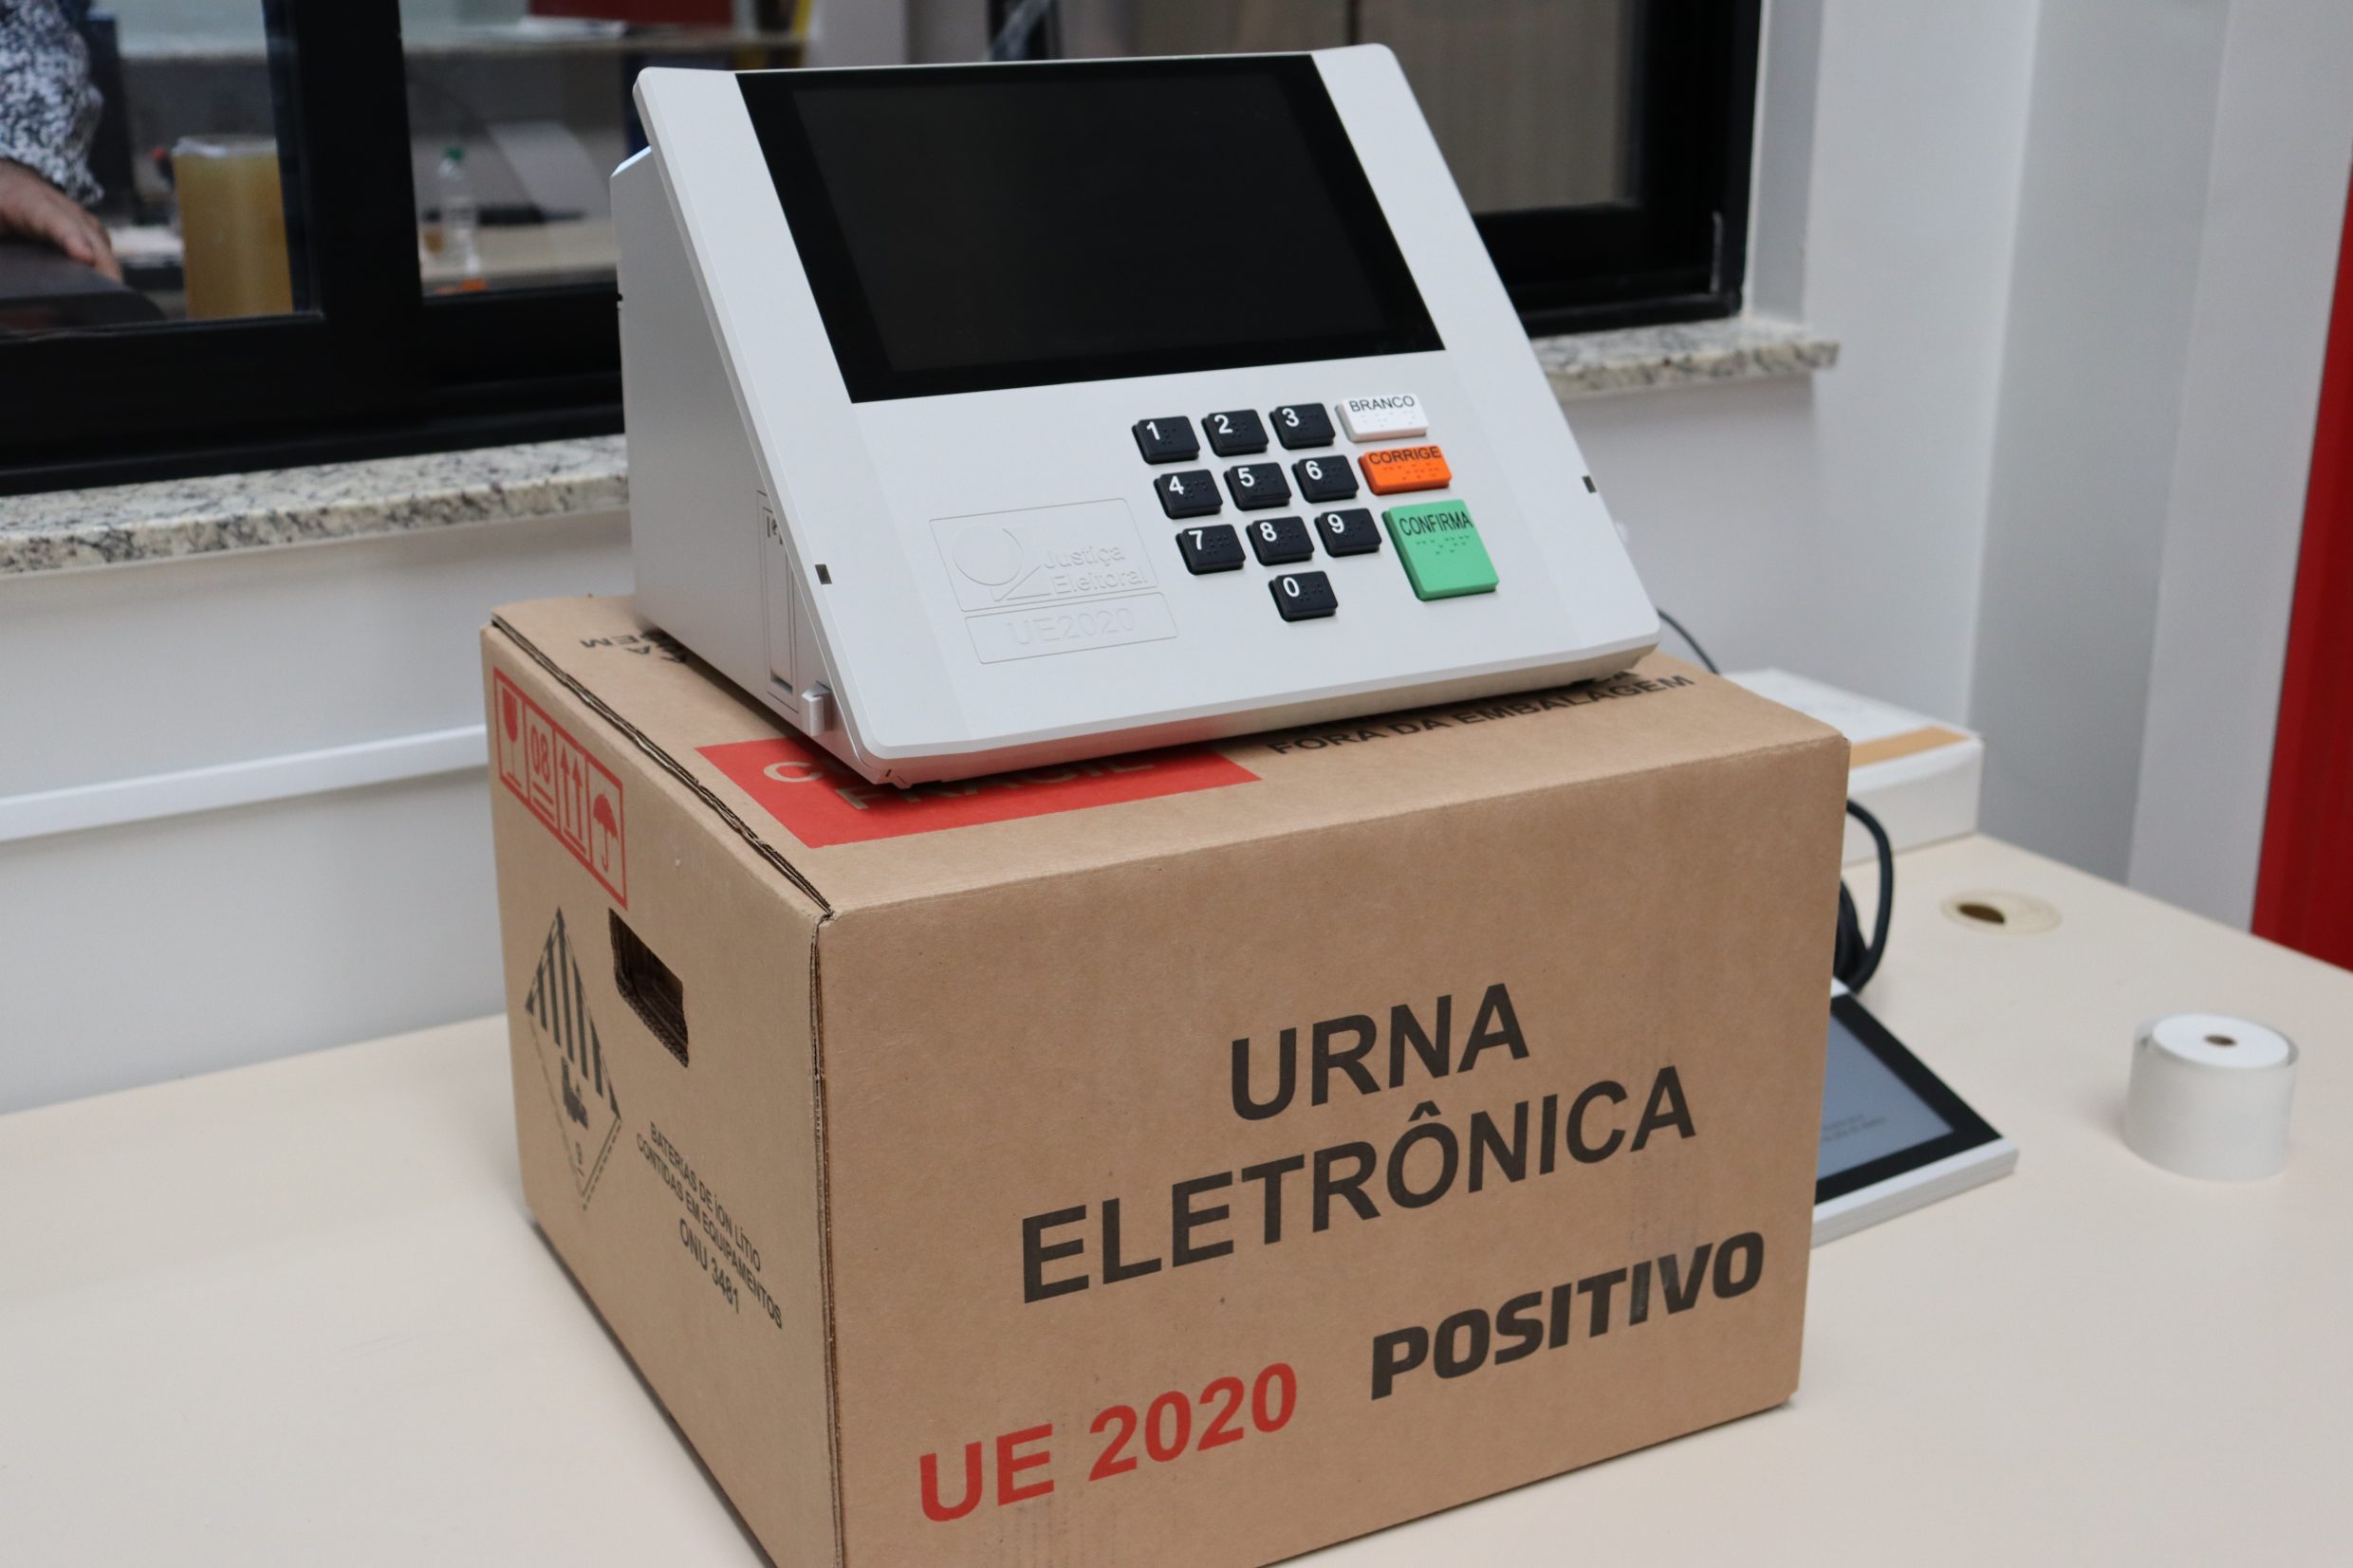 Modelo mais atual de urna eletrônica que será utilizada nas eleições presidenciais de 2022- Observatório das Eleições iCEV- Contra a desinformação e fakenews no Sistema Eleitoral Brasileiro